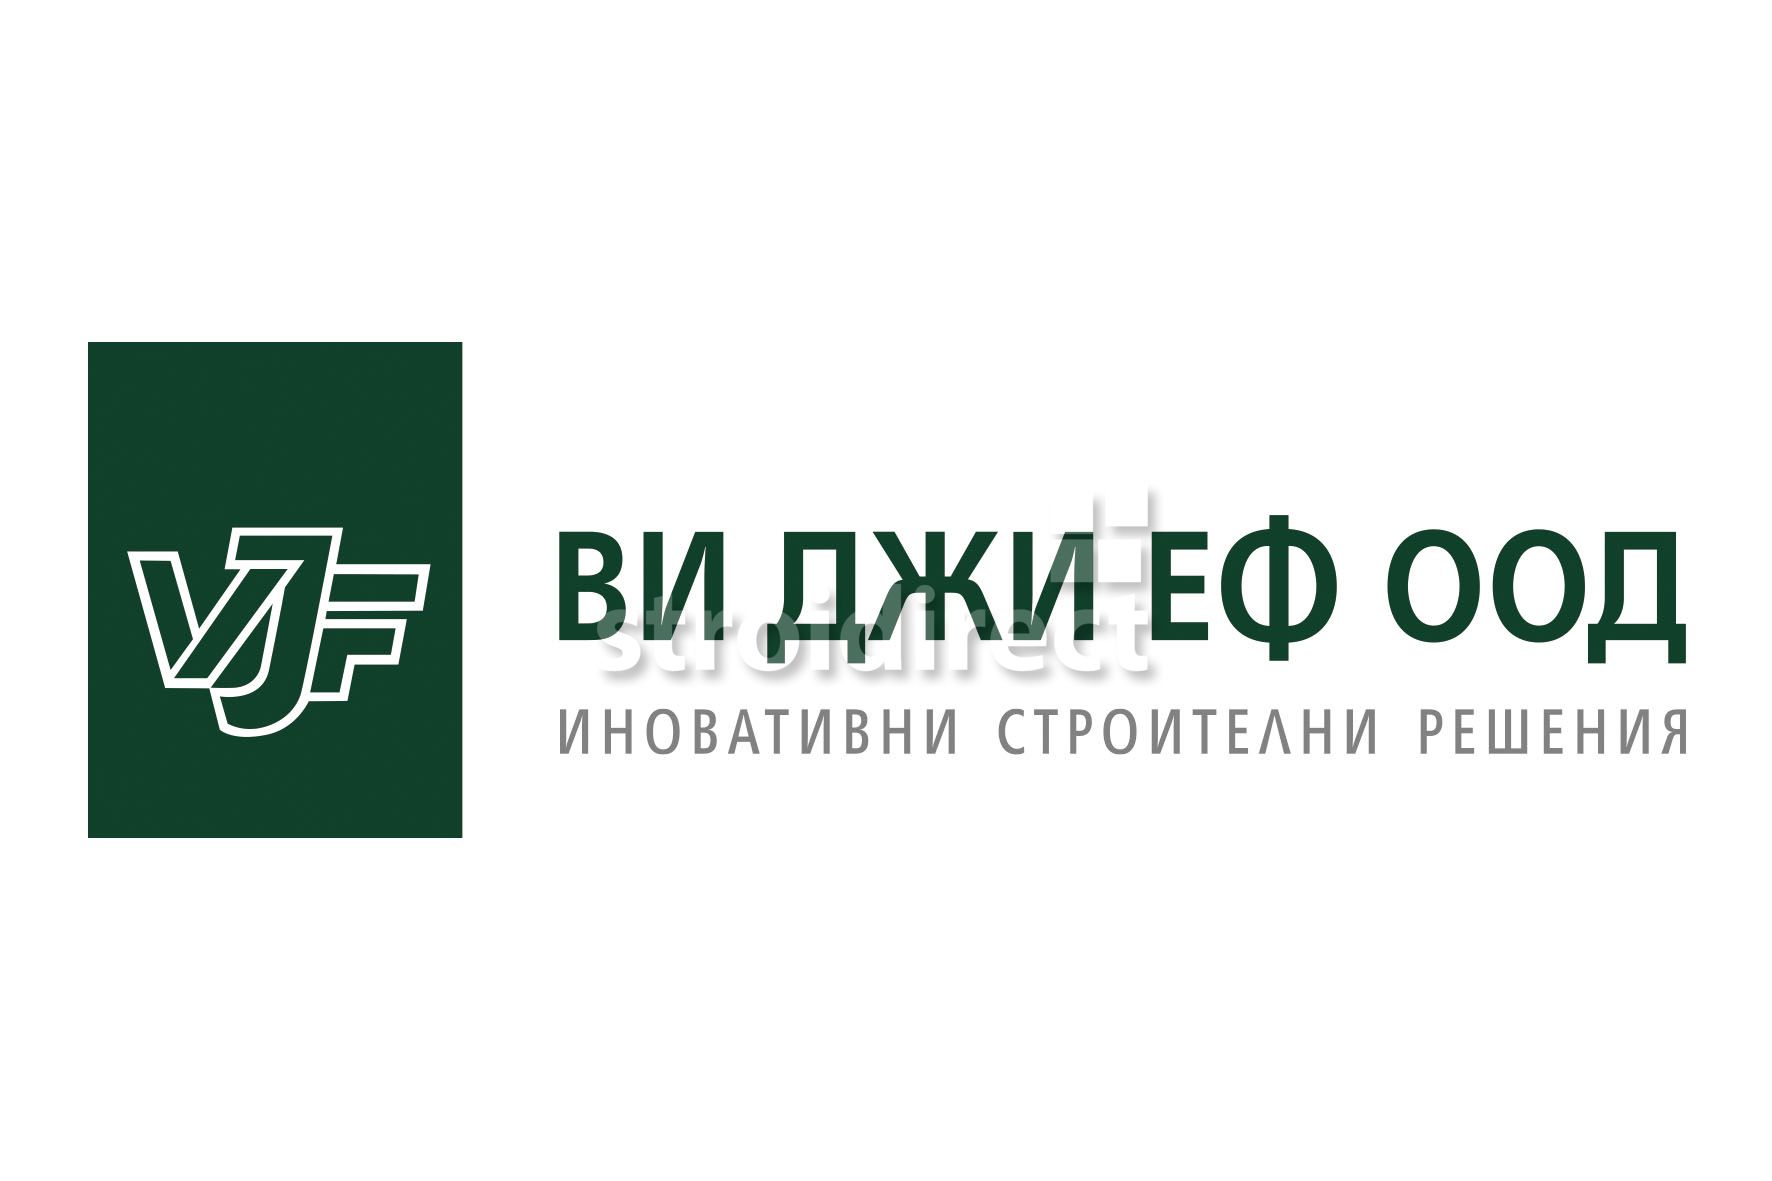 VJF_Logo.jpg